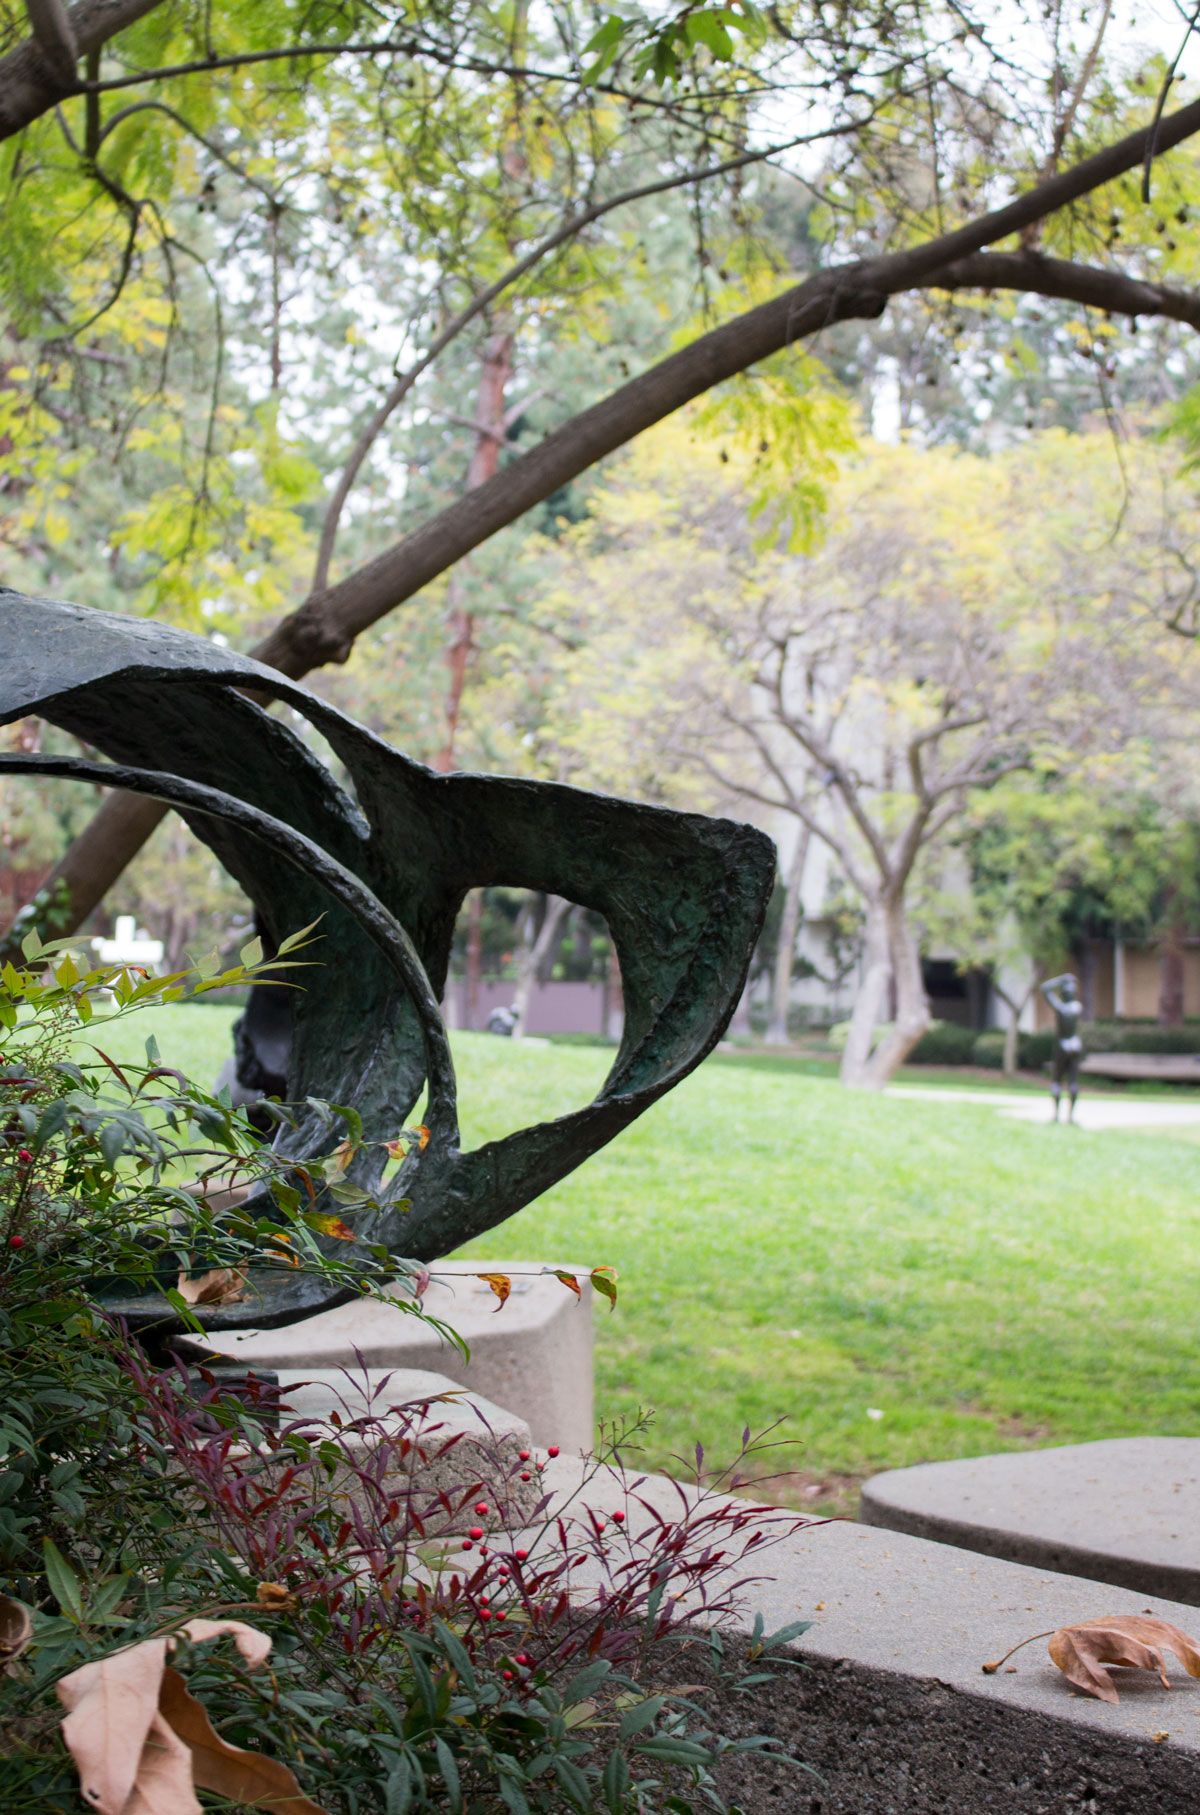 Franklin D. Murphy Sculpture Garden